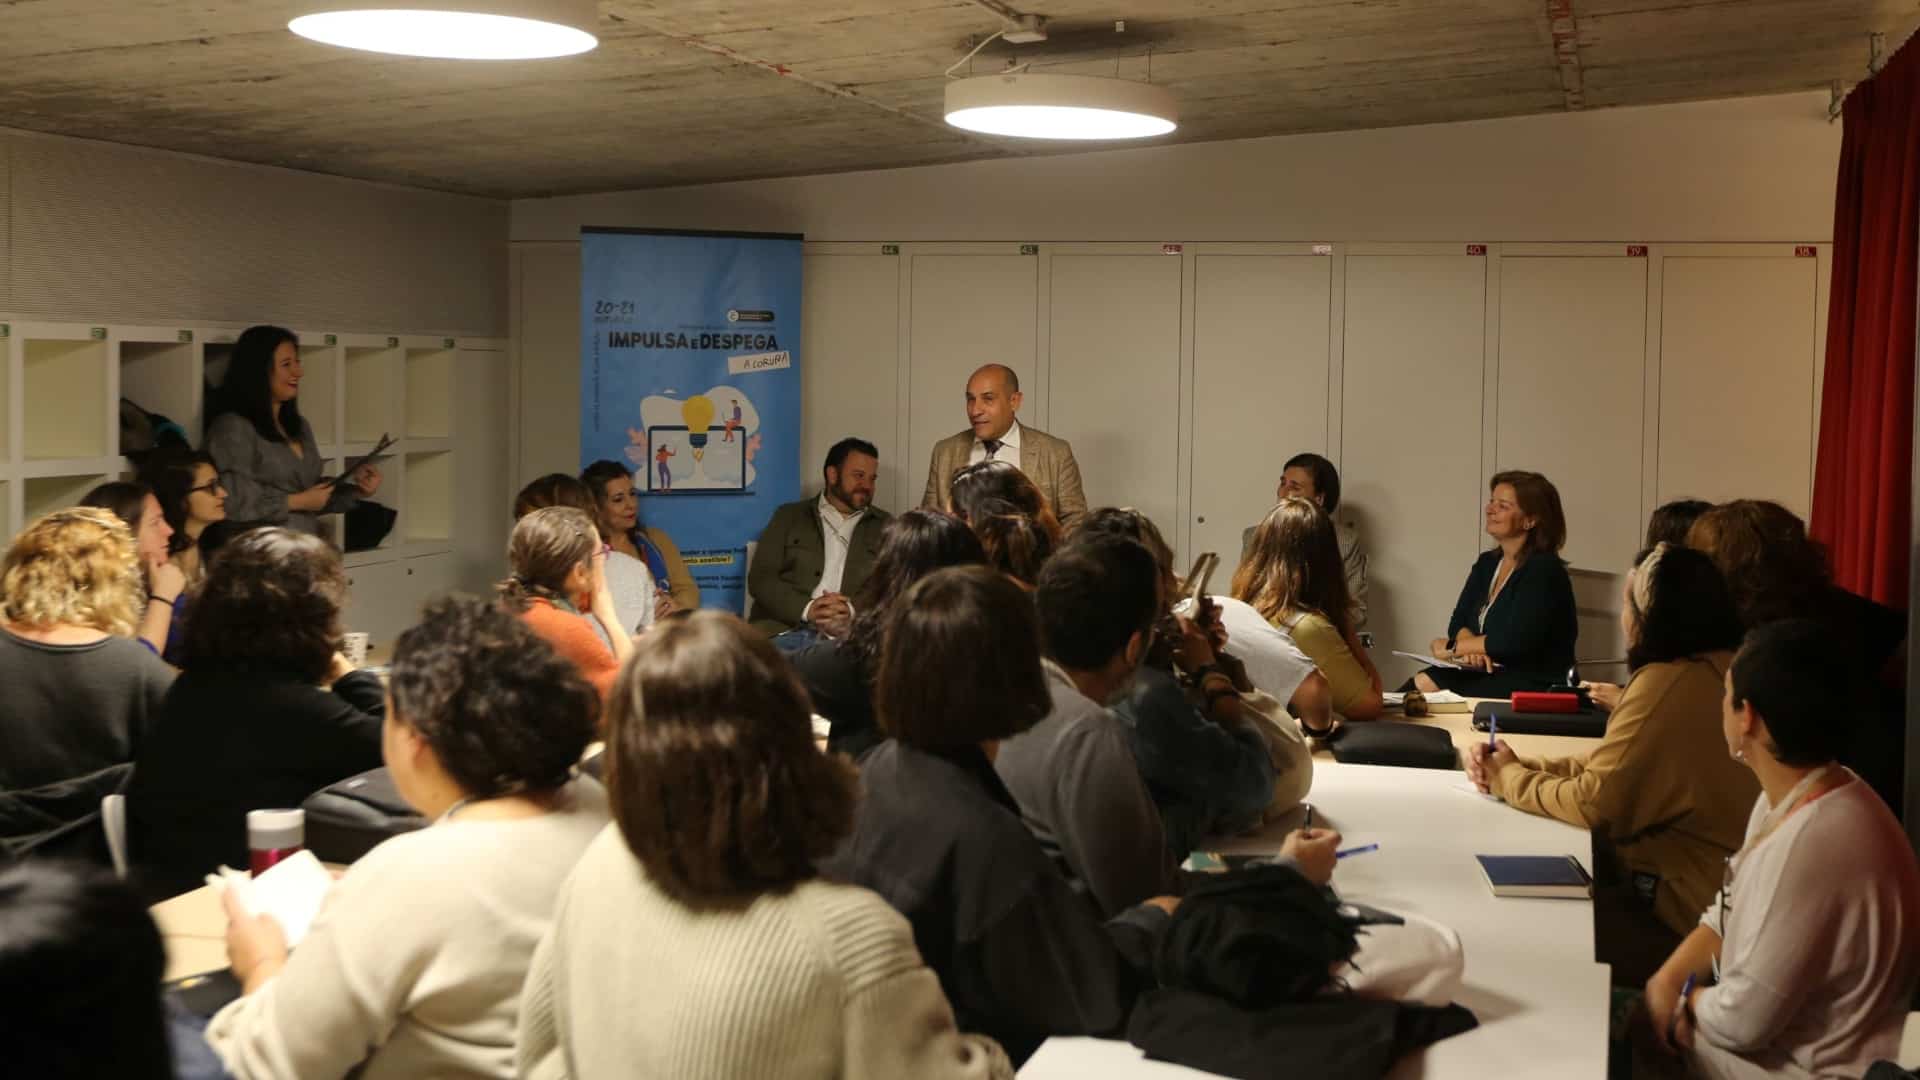 La presentación de las jornadas para emprendedores "Impulsa e Despega" en A Coruña | CONCELLO DA CORUÑA